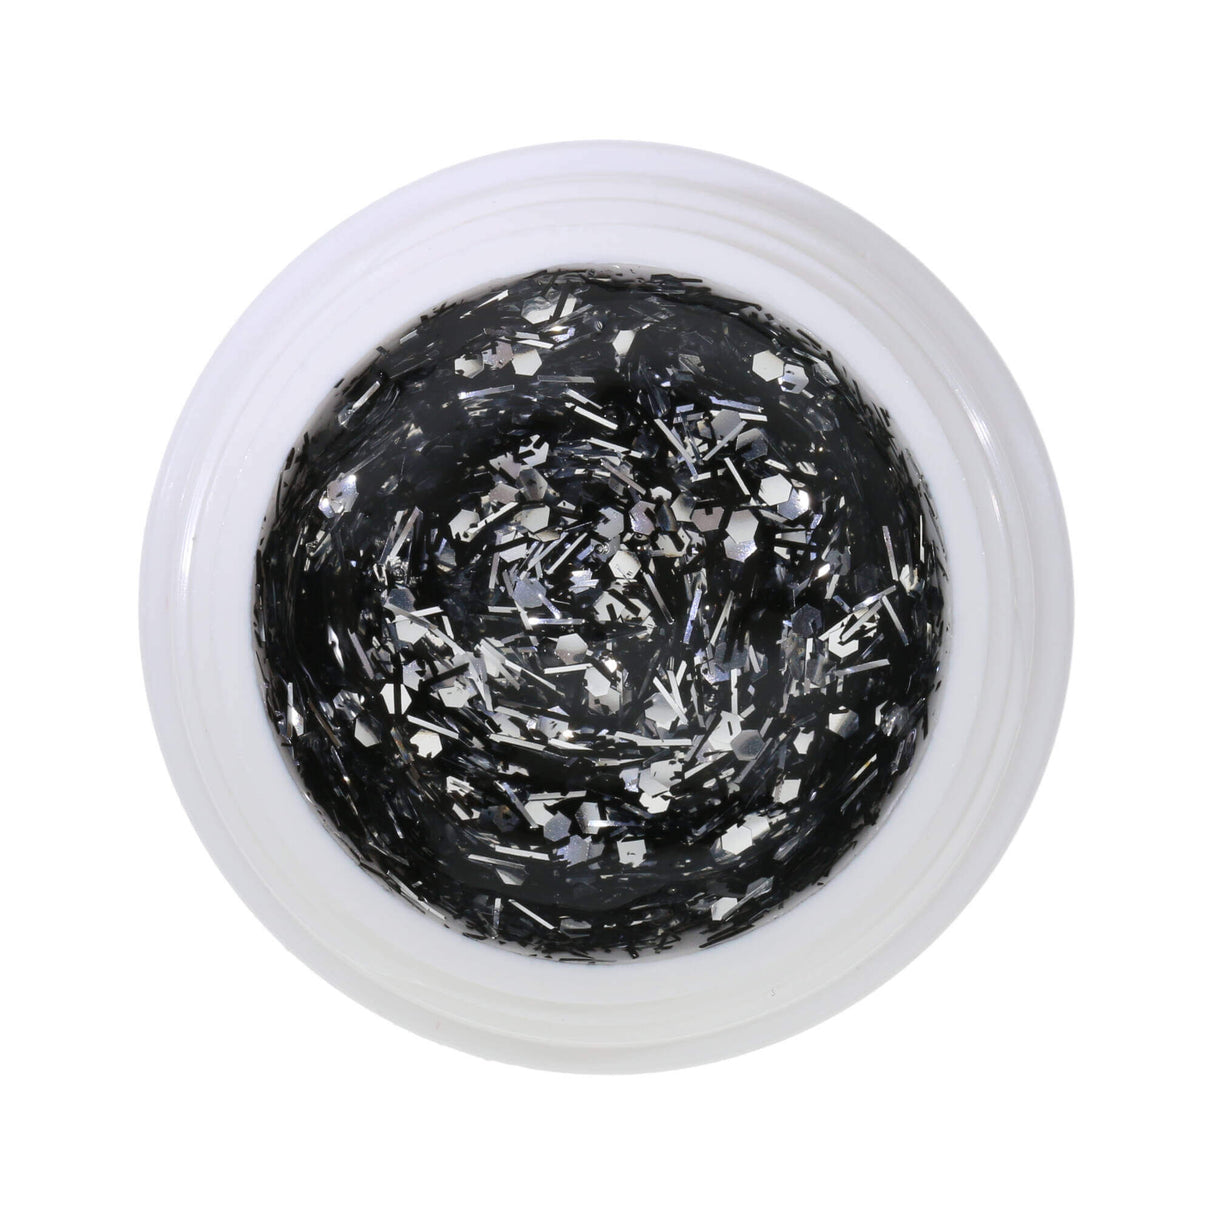 # 426 Premium-GLITTER Gel màu 5ml màu bạc lấp lánh với các sợi chỉ đen